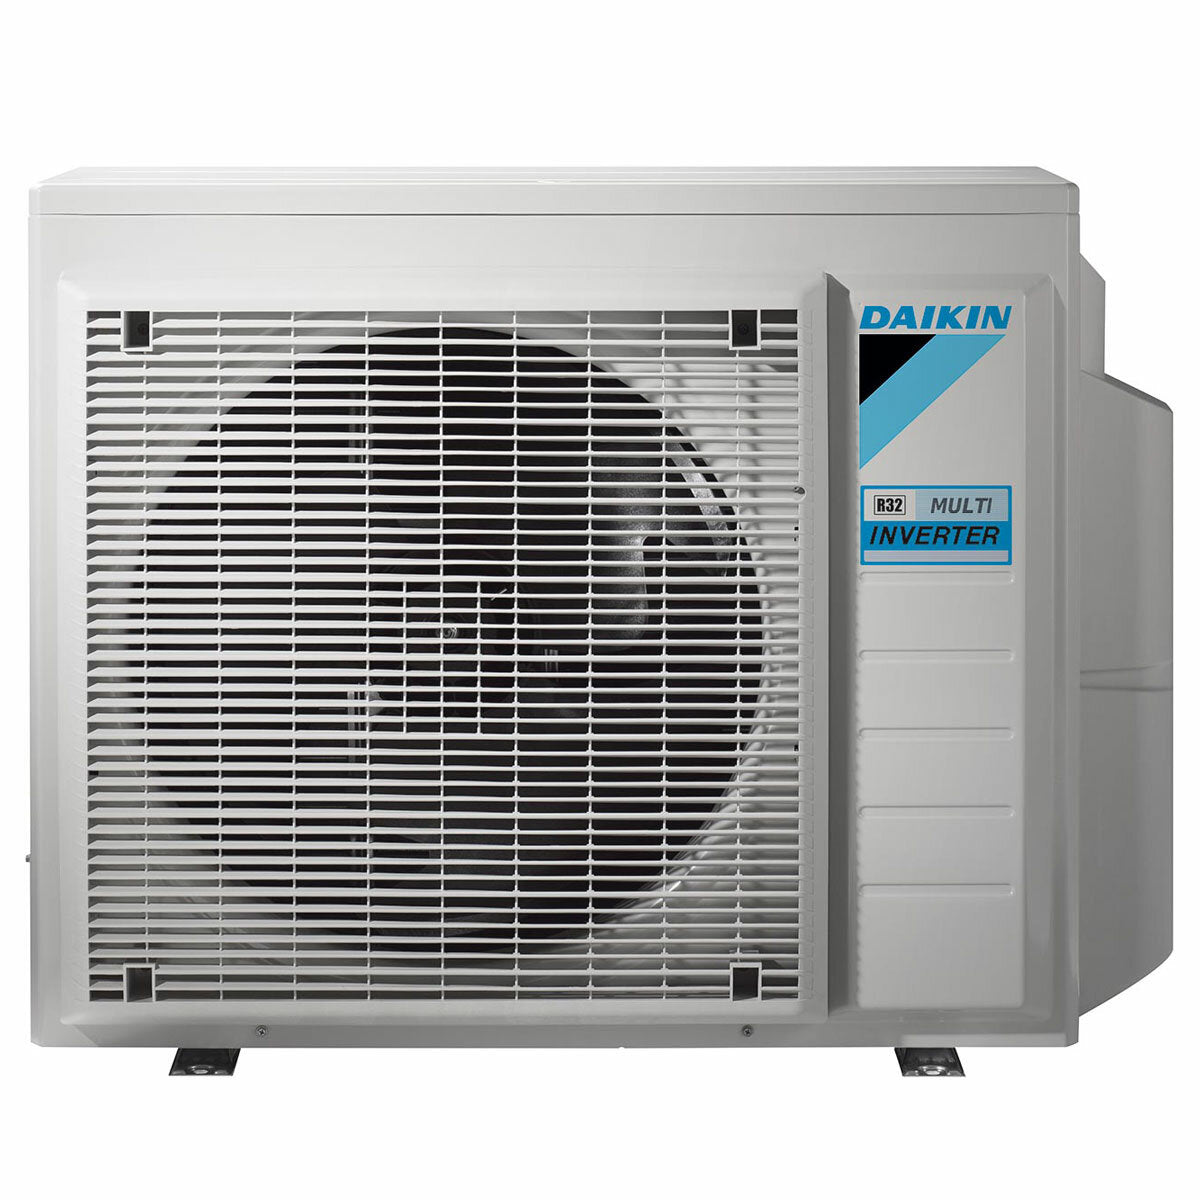 Daikin Emura air conditioner 3 split panels 12000+12000+12000+12000 BTU inverter A++ wifi outdoor unit 7.4 kW White